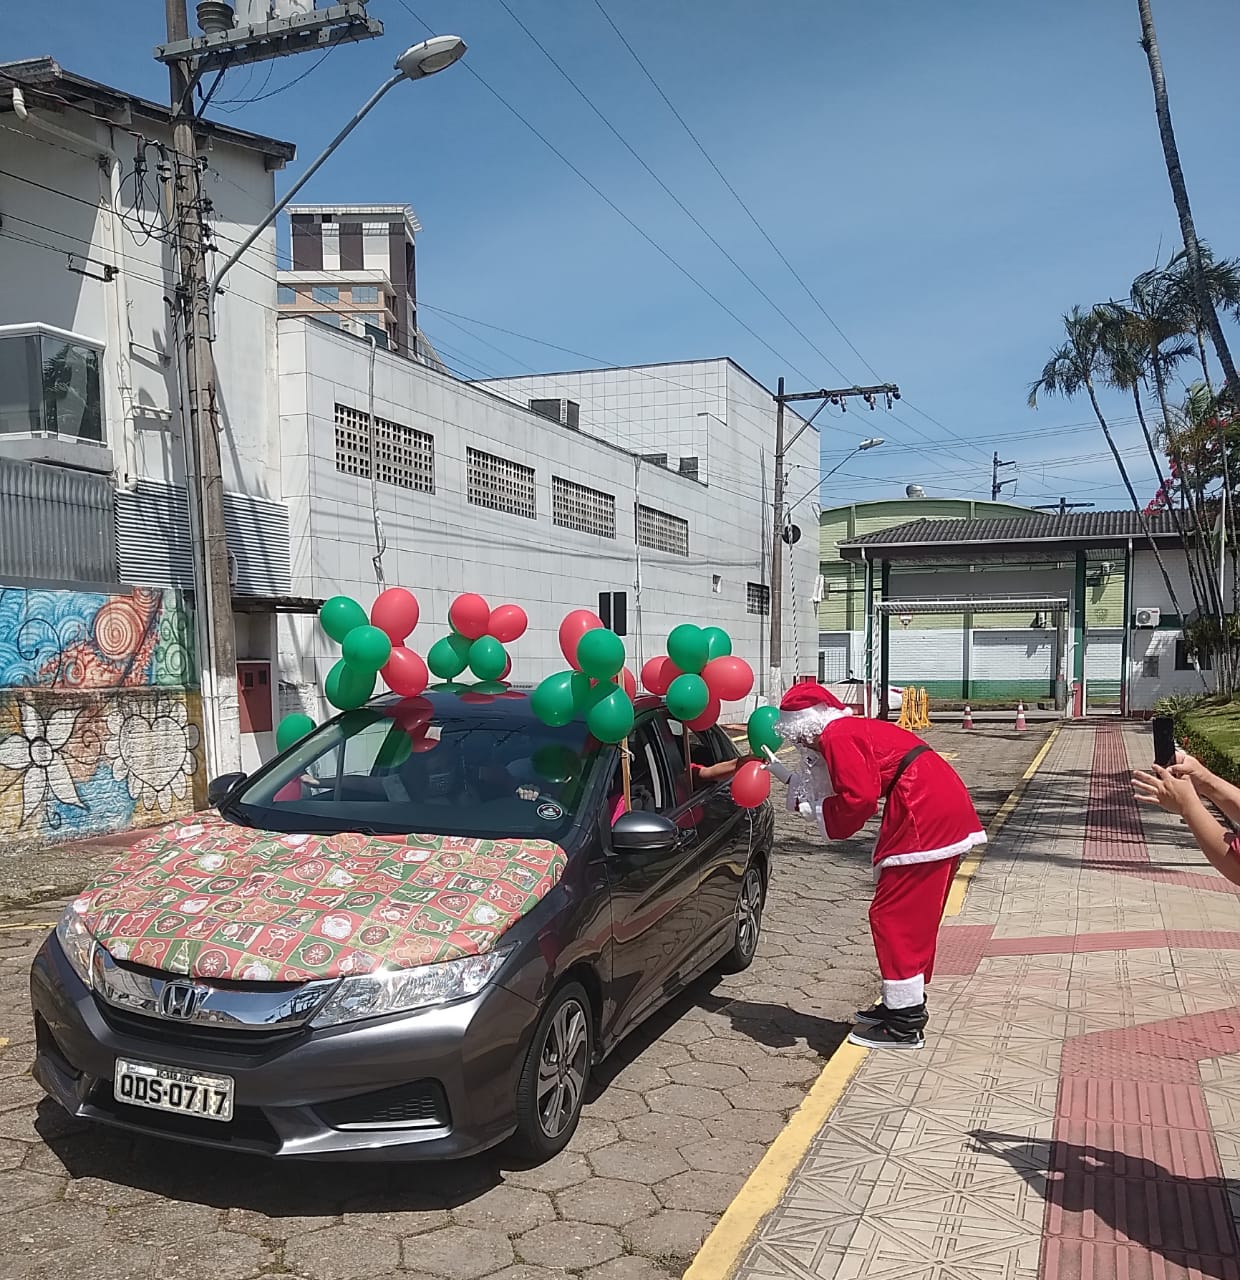 Veículo enfeitado com balões verde e vermelho e com pano temático de Natal entra no campus da Fundação